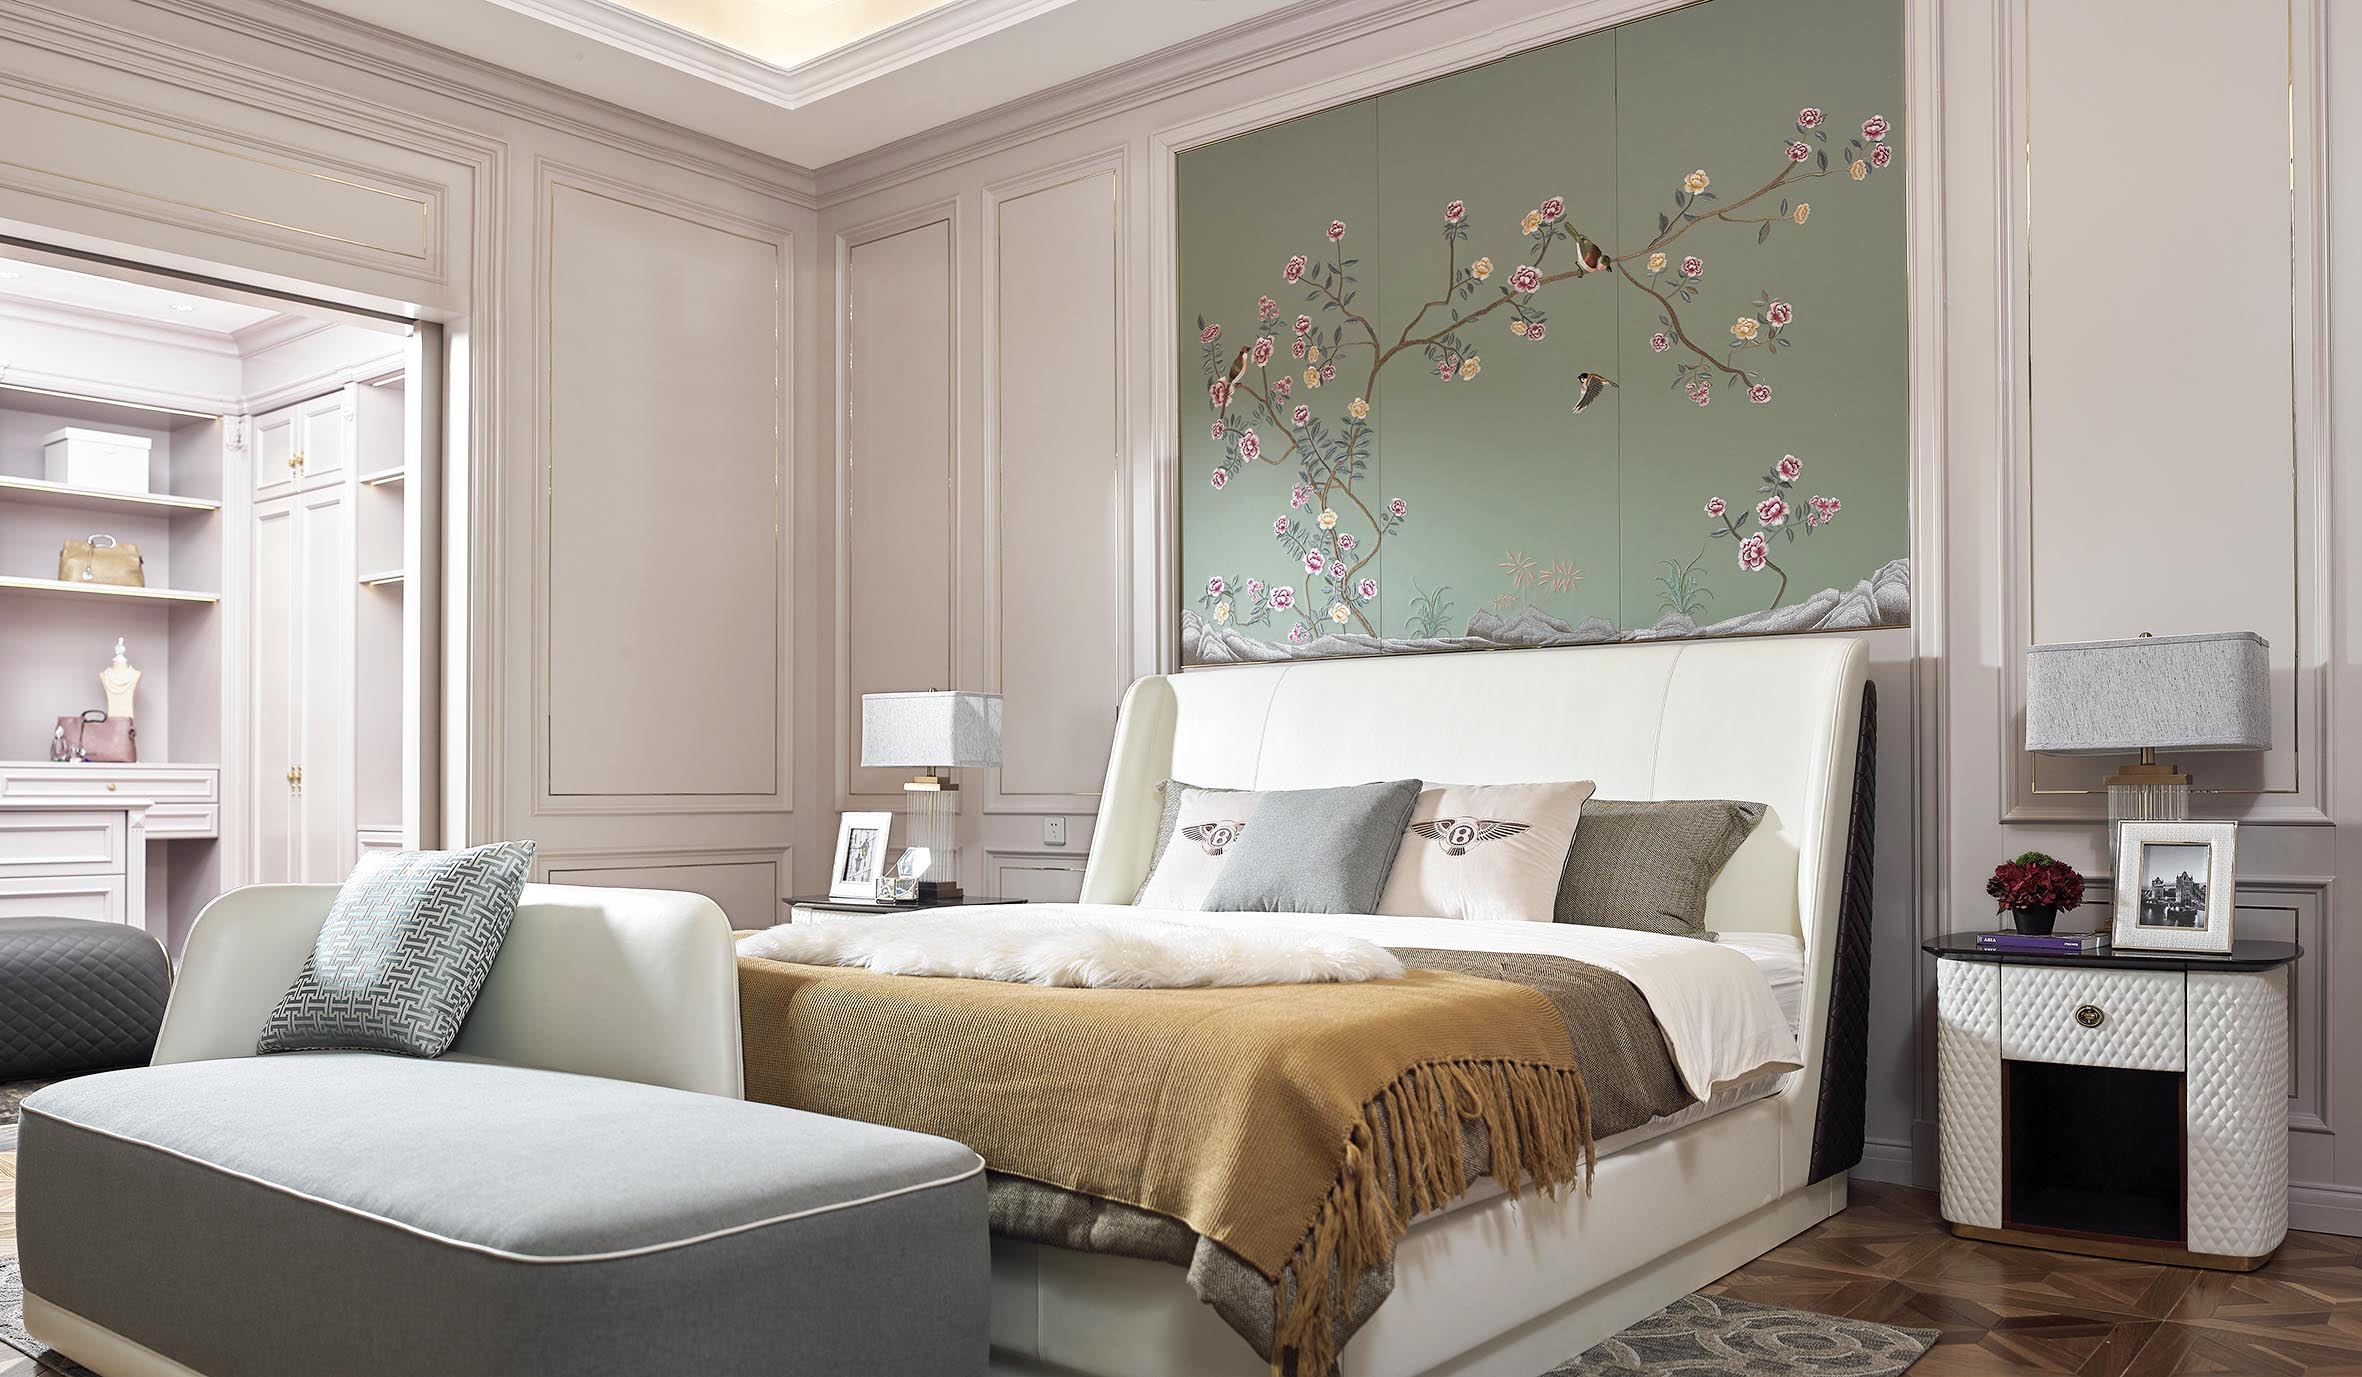 الصين مشاريع الفنادق السكنية الحديثة أثاث الفندق الكامل أثاث خشبي كامل غرفة نوم